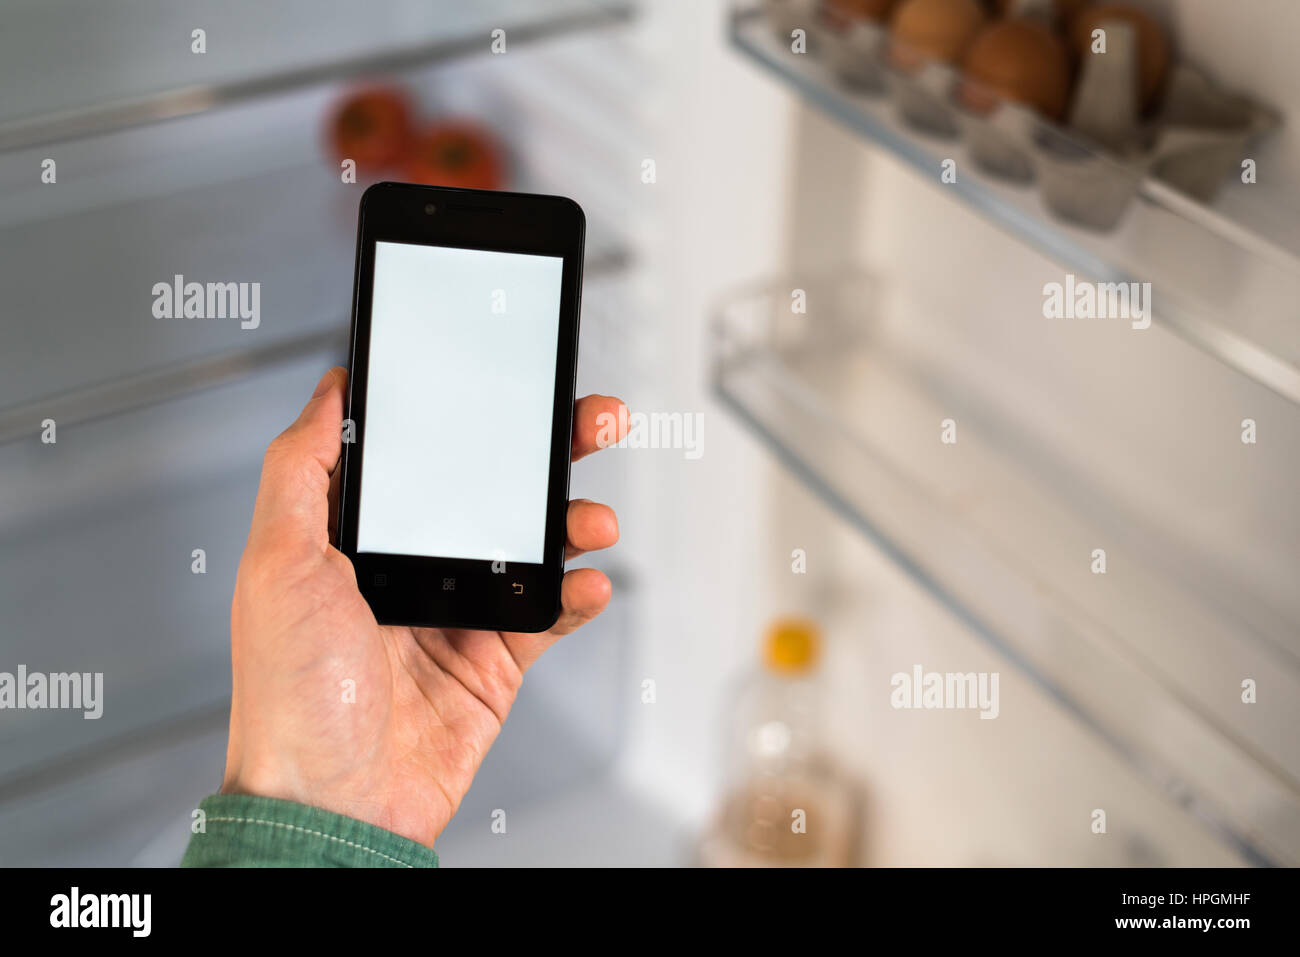 Close-up of personne mains holding smartphone montrant un écran blanc sur l'affichage. Réfrigérateur vide sur l'arrière-plan Banque D'Images